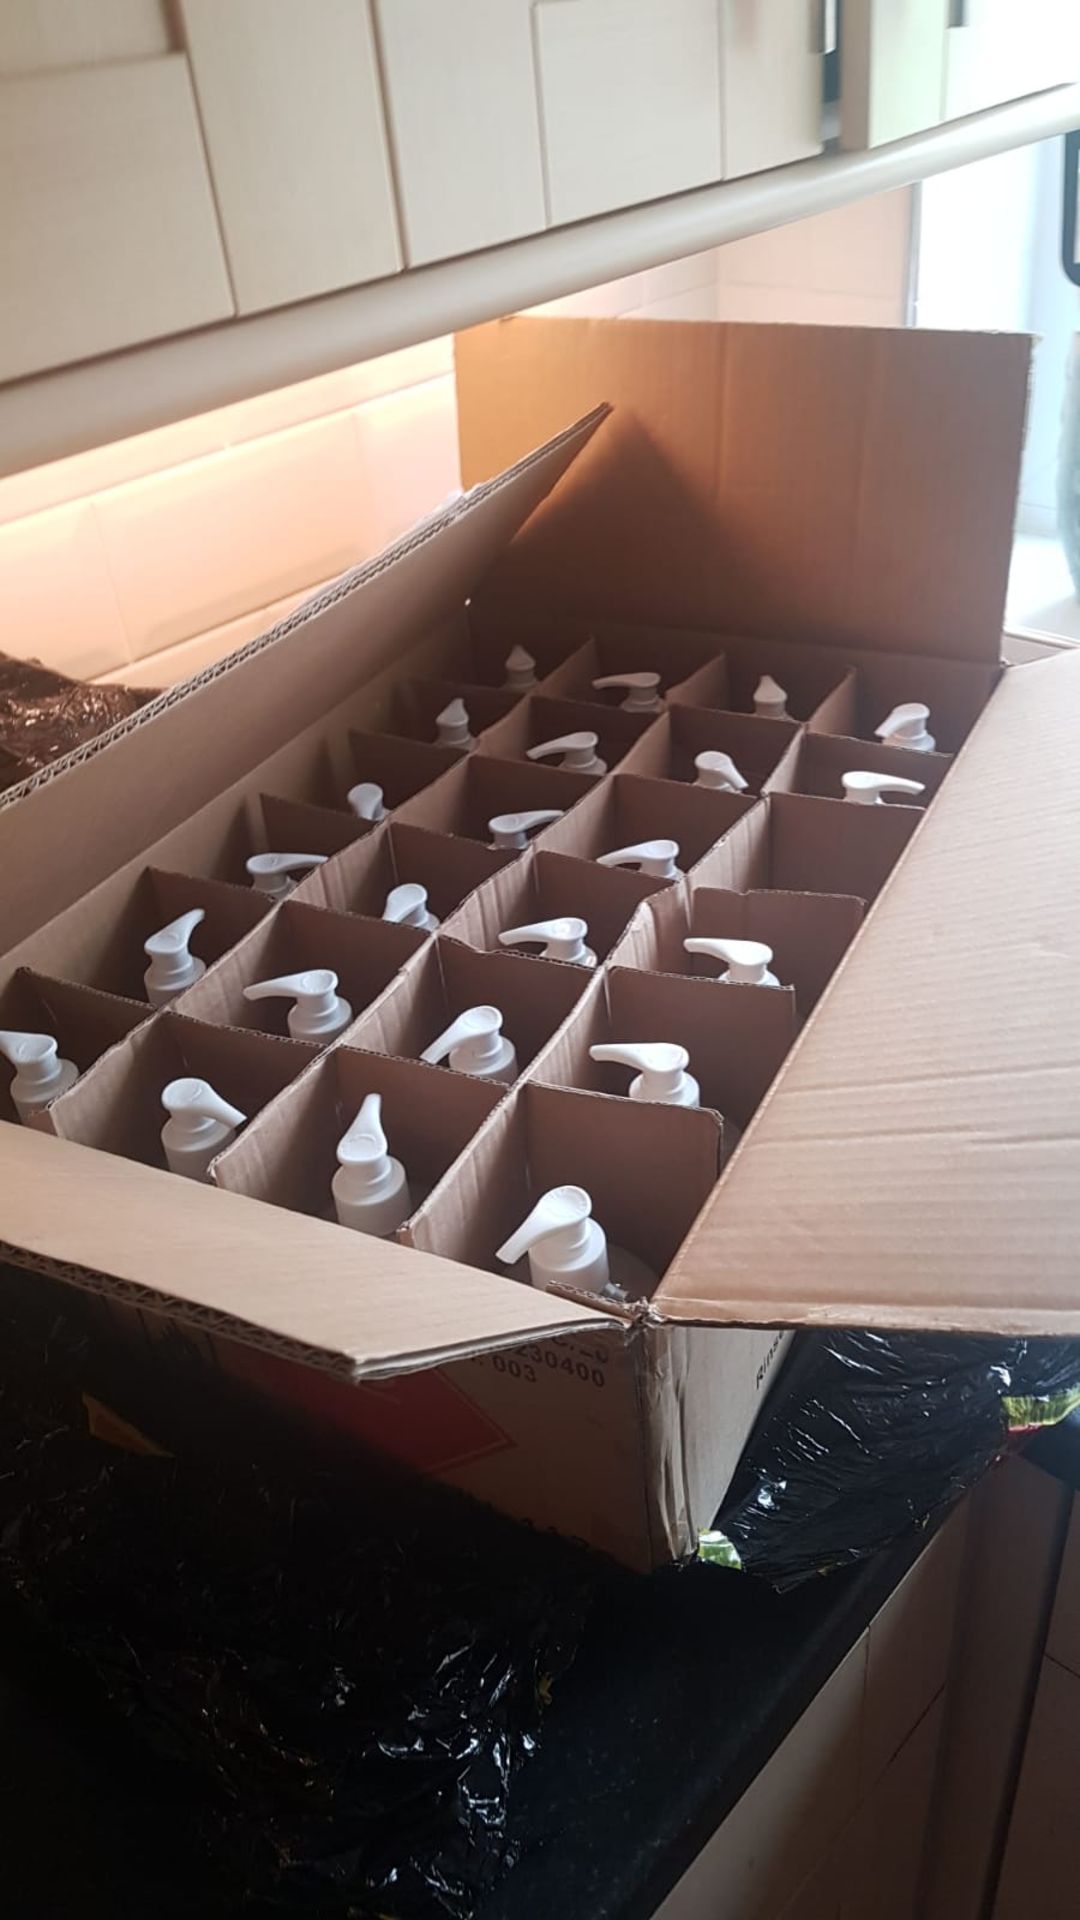 Lot of 960 x Bottles of 500ml Hand Santiser - Image 3 of 3